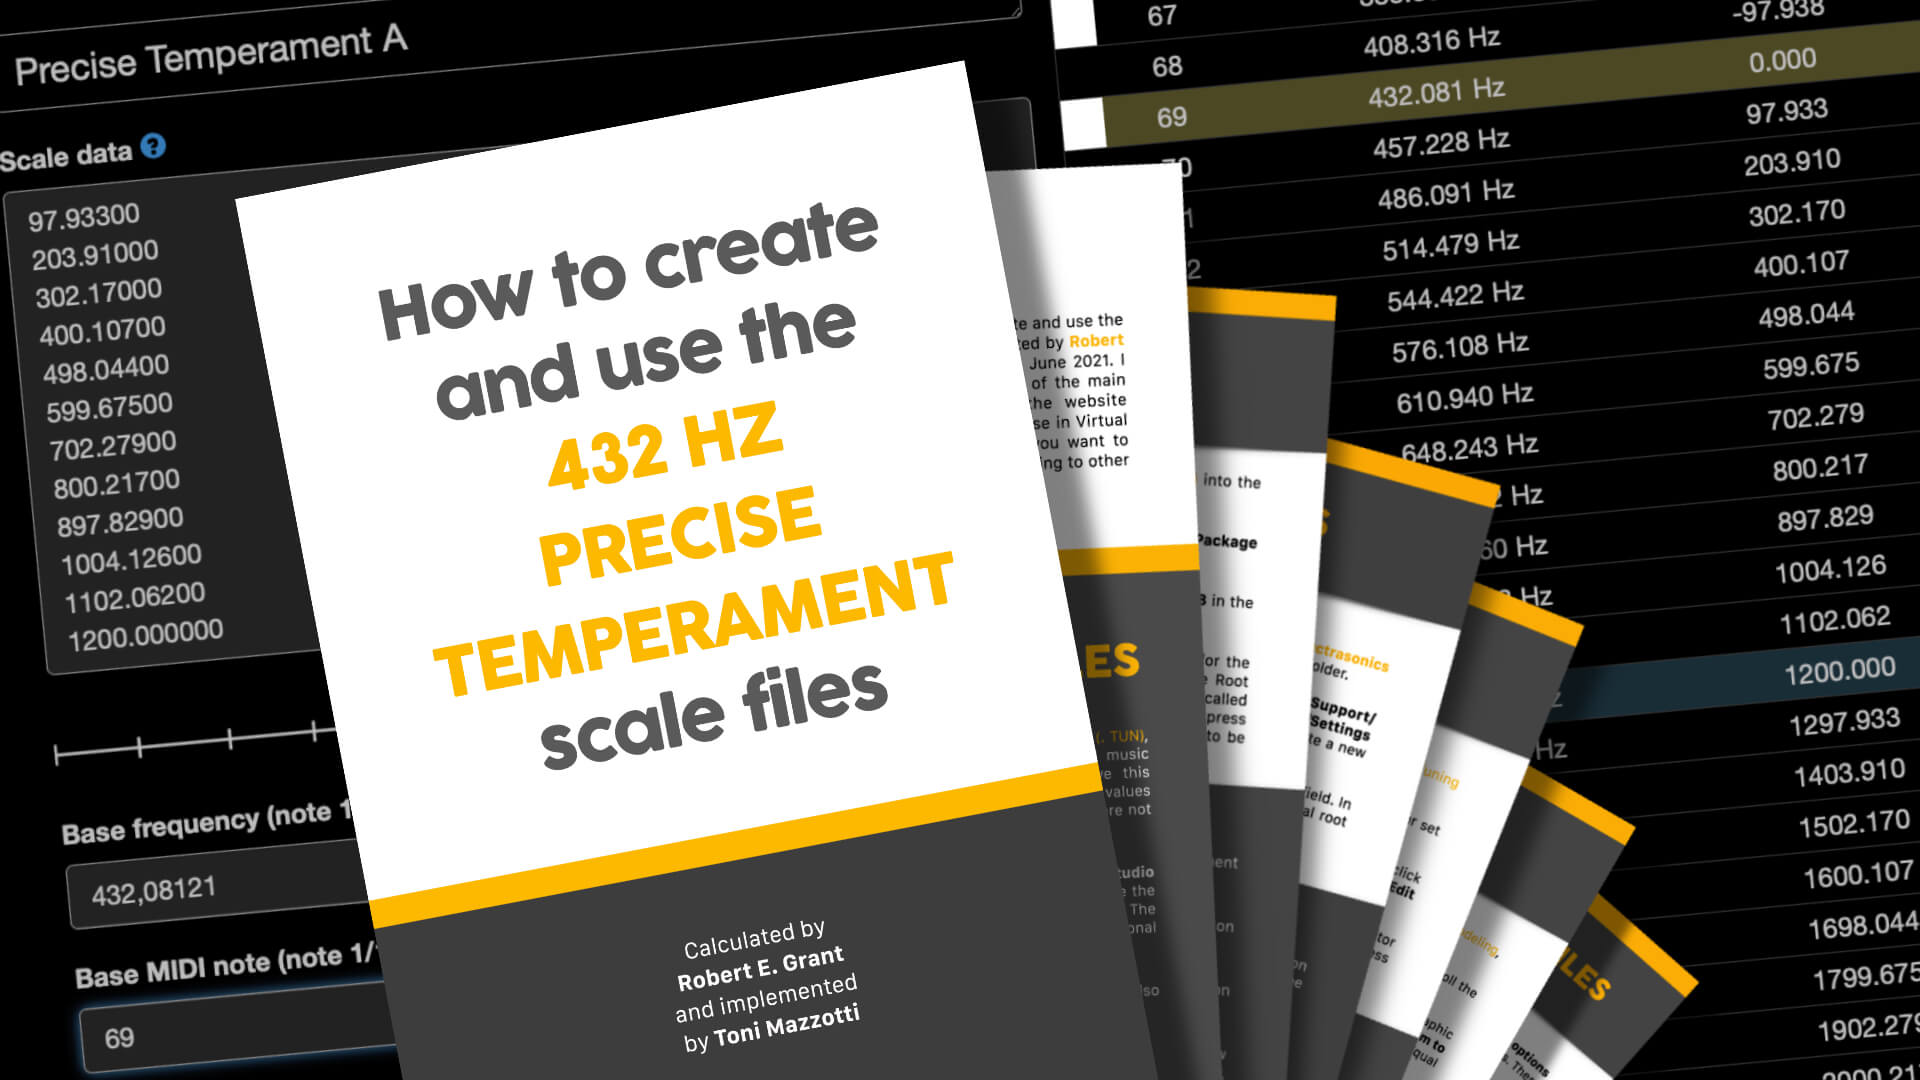 How to create and use the 432 Hz Precise Temperament scale files -  ToniMazzotti